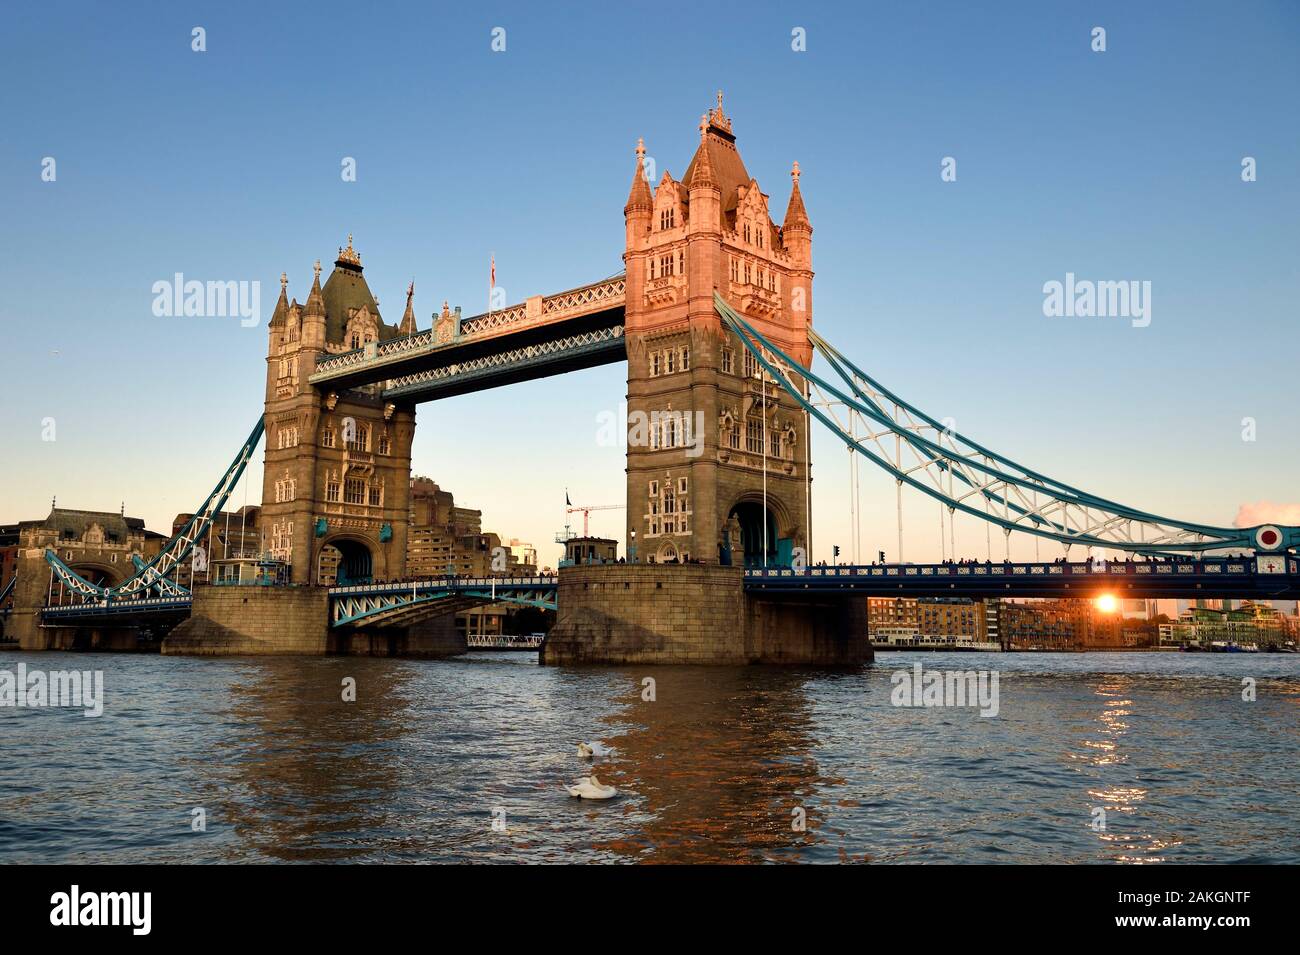 Royaume-uni, Londres, Tower Bridge, pont tournant, de l'autre côté de la Tamise, entre les quartiers de Southwark et de Tower Hamlets Banque D'Images